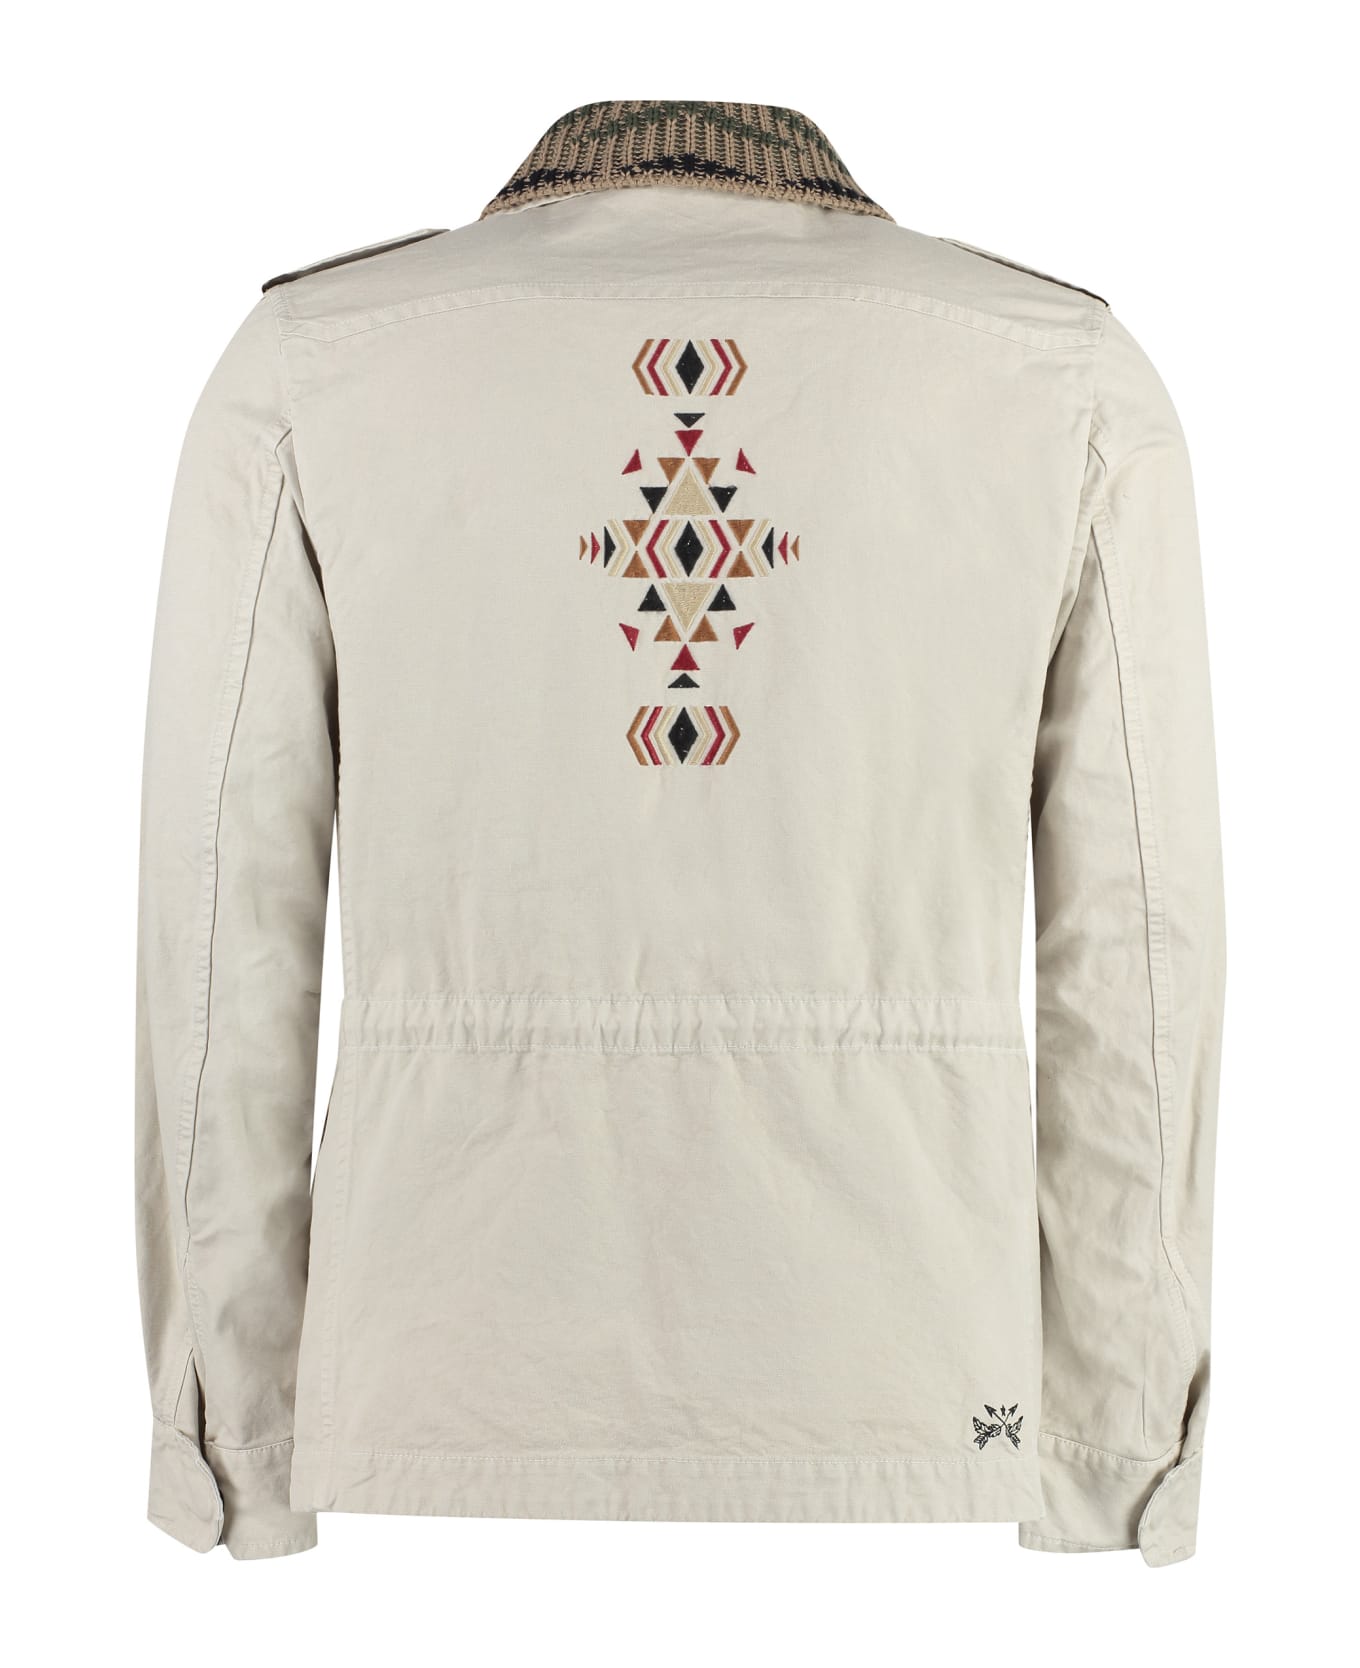 Bazar Deluxe Durango Unlined Cotton Jacket - Beige レインコート